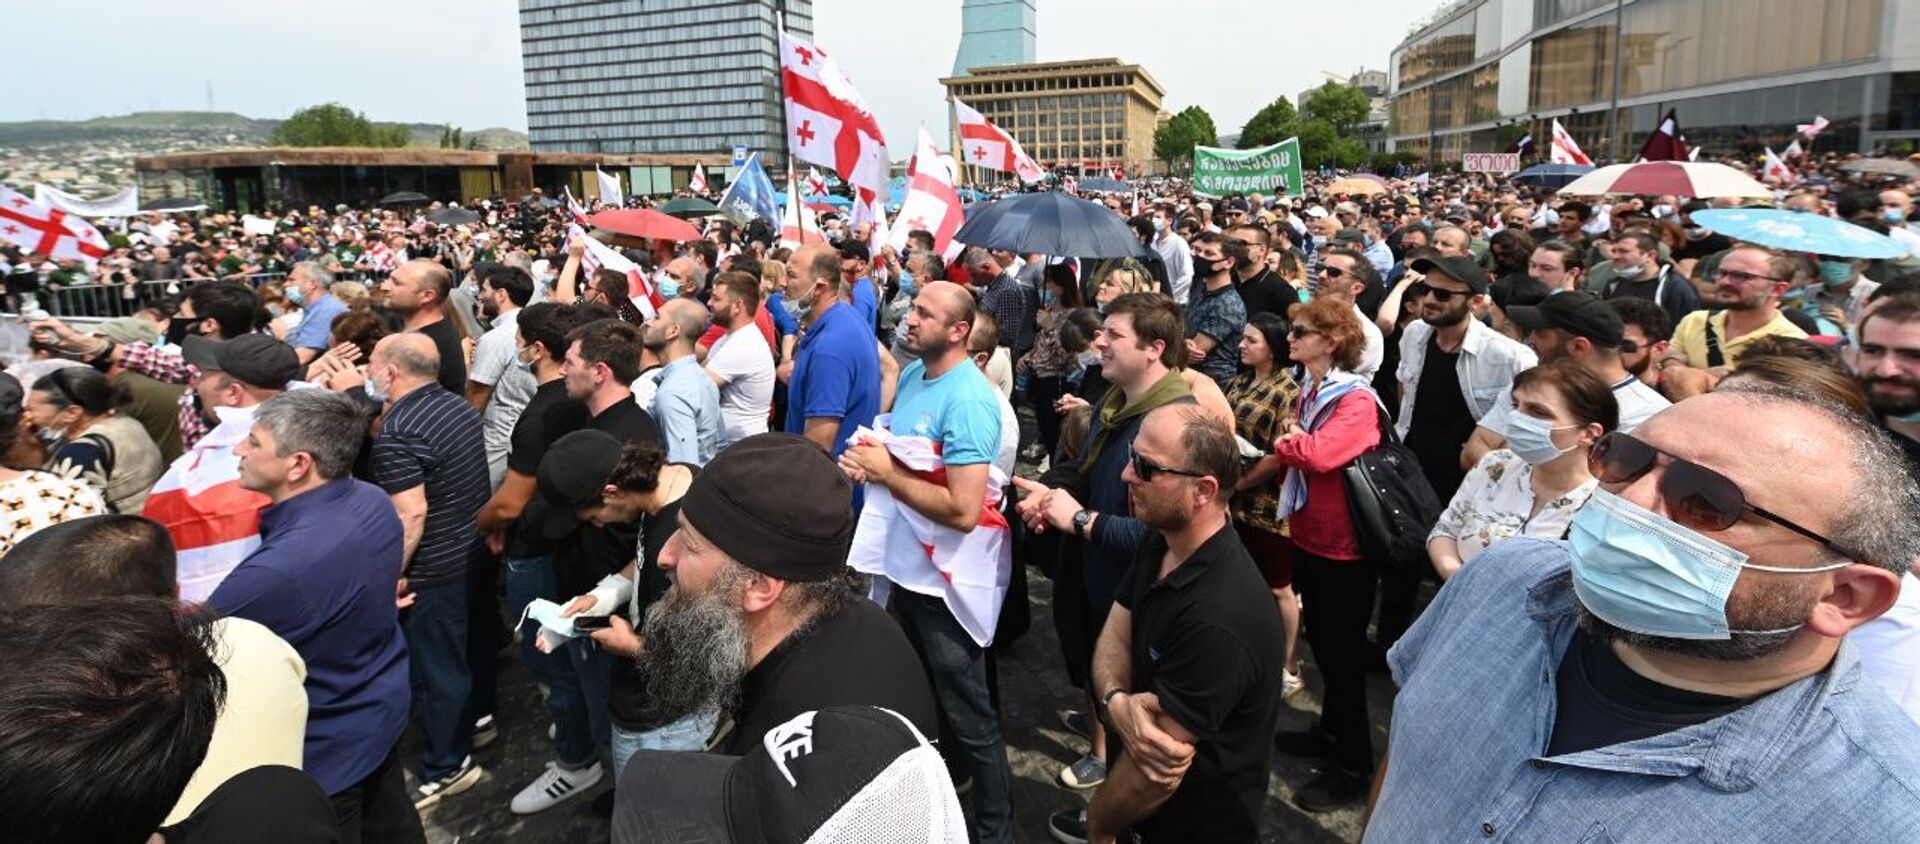 Противники строительства каскада Намахвани ГЭС проводят акцию протеста 23 мая 2021 года - Sputnik Грузия, 1920, 23.05.2021